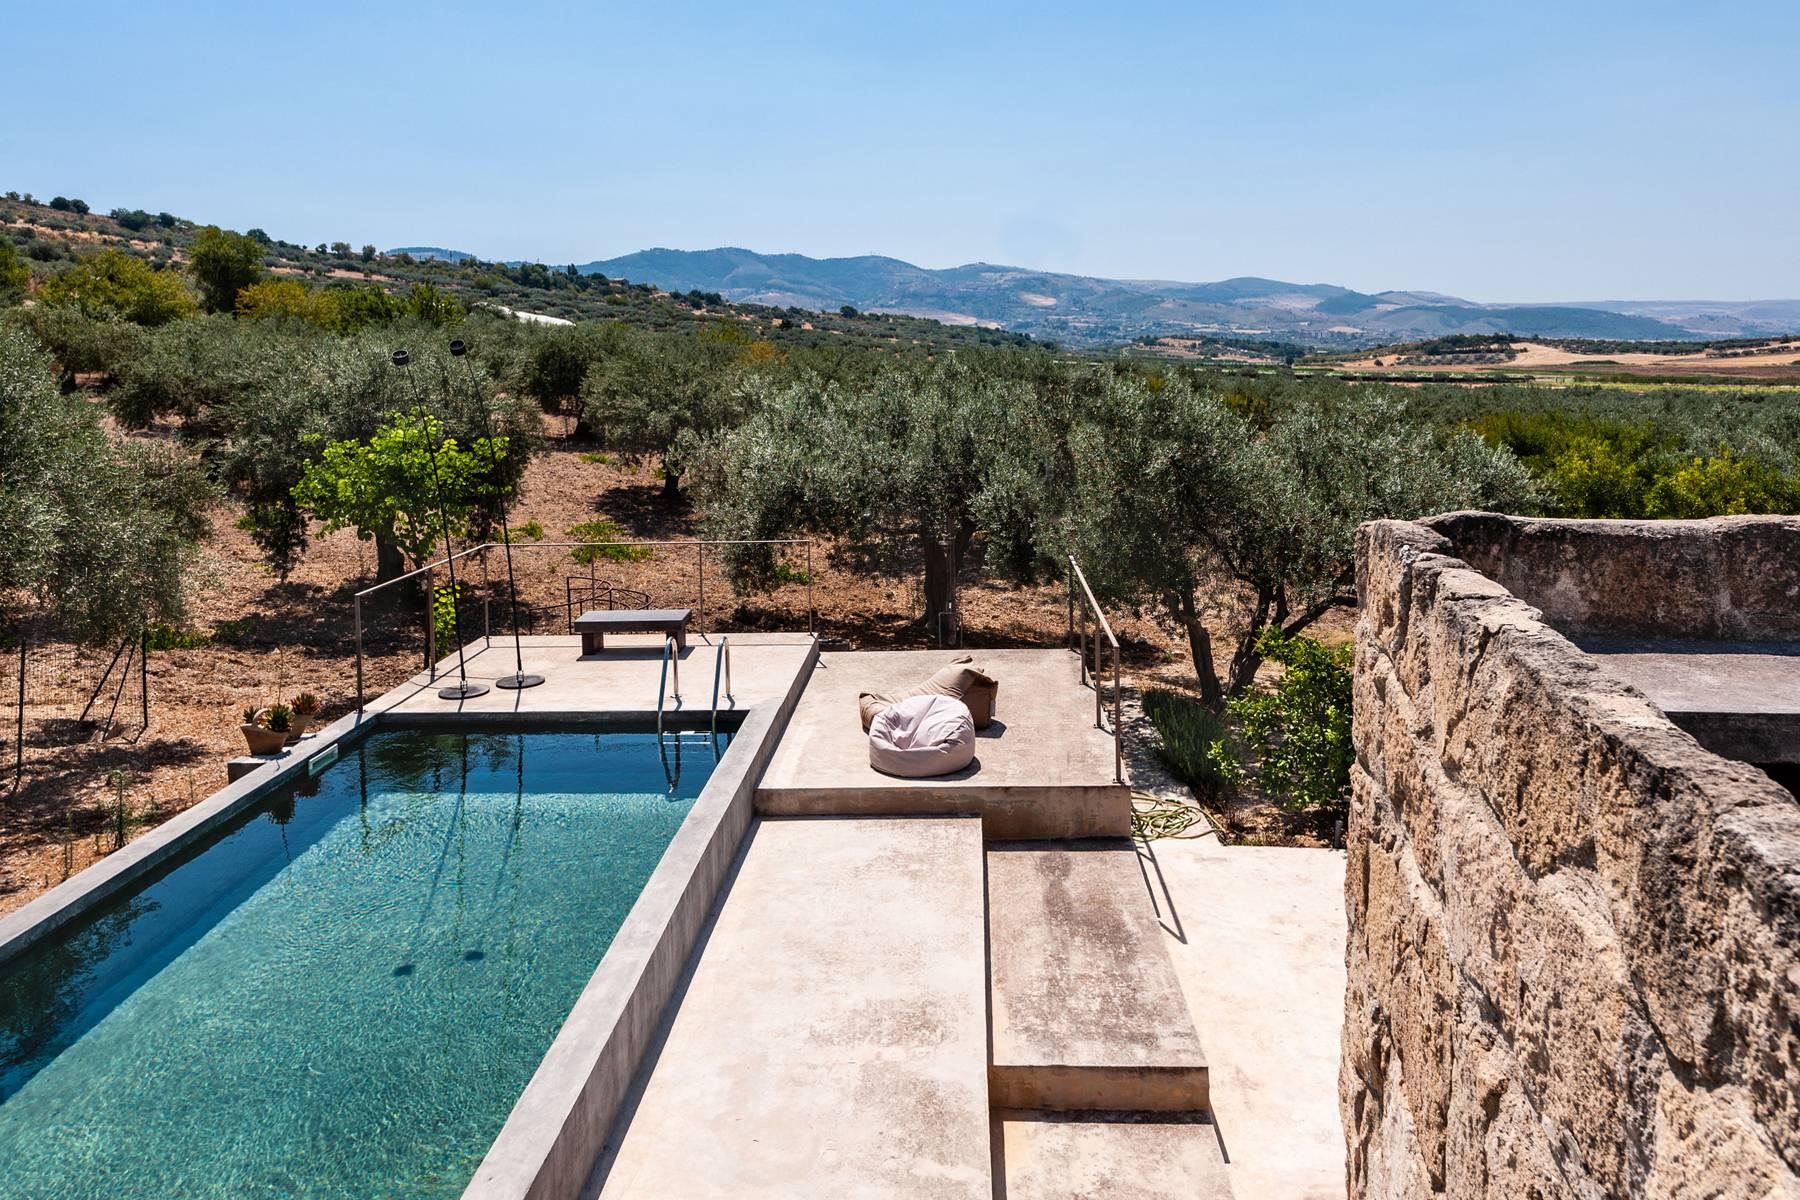 Maison de campagne avec piscine surplombant la campagne sicilienne - 1